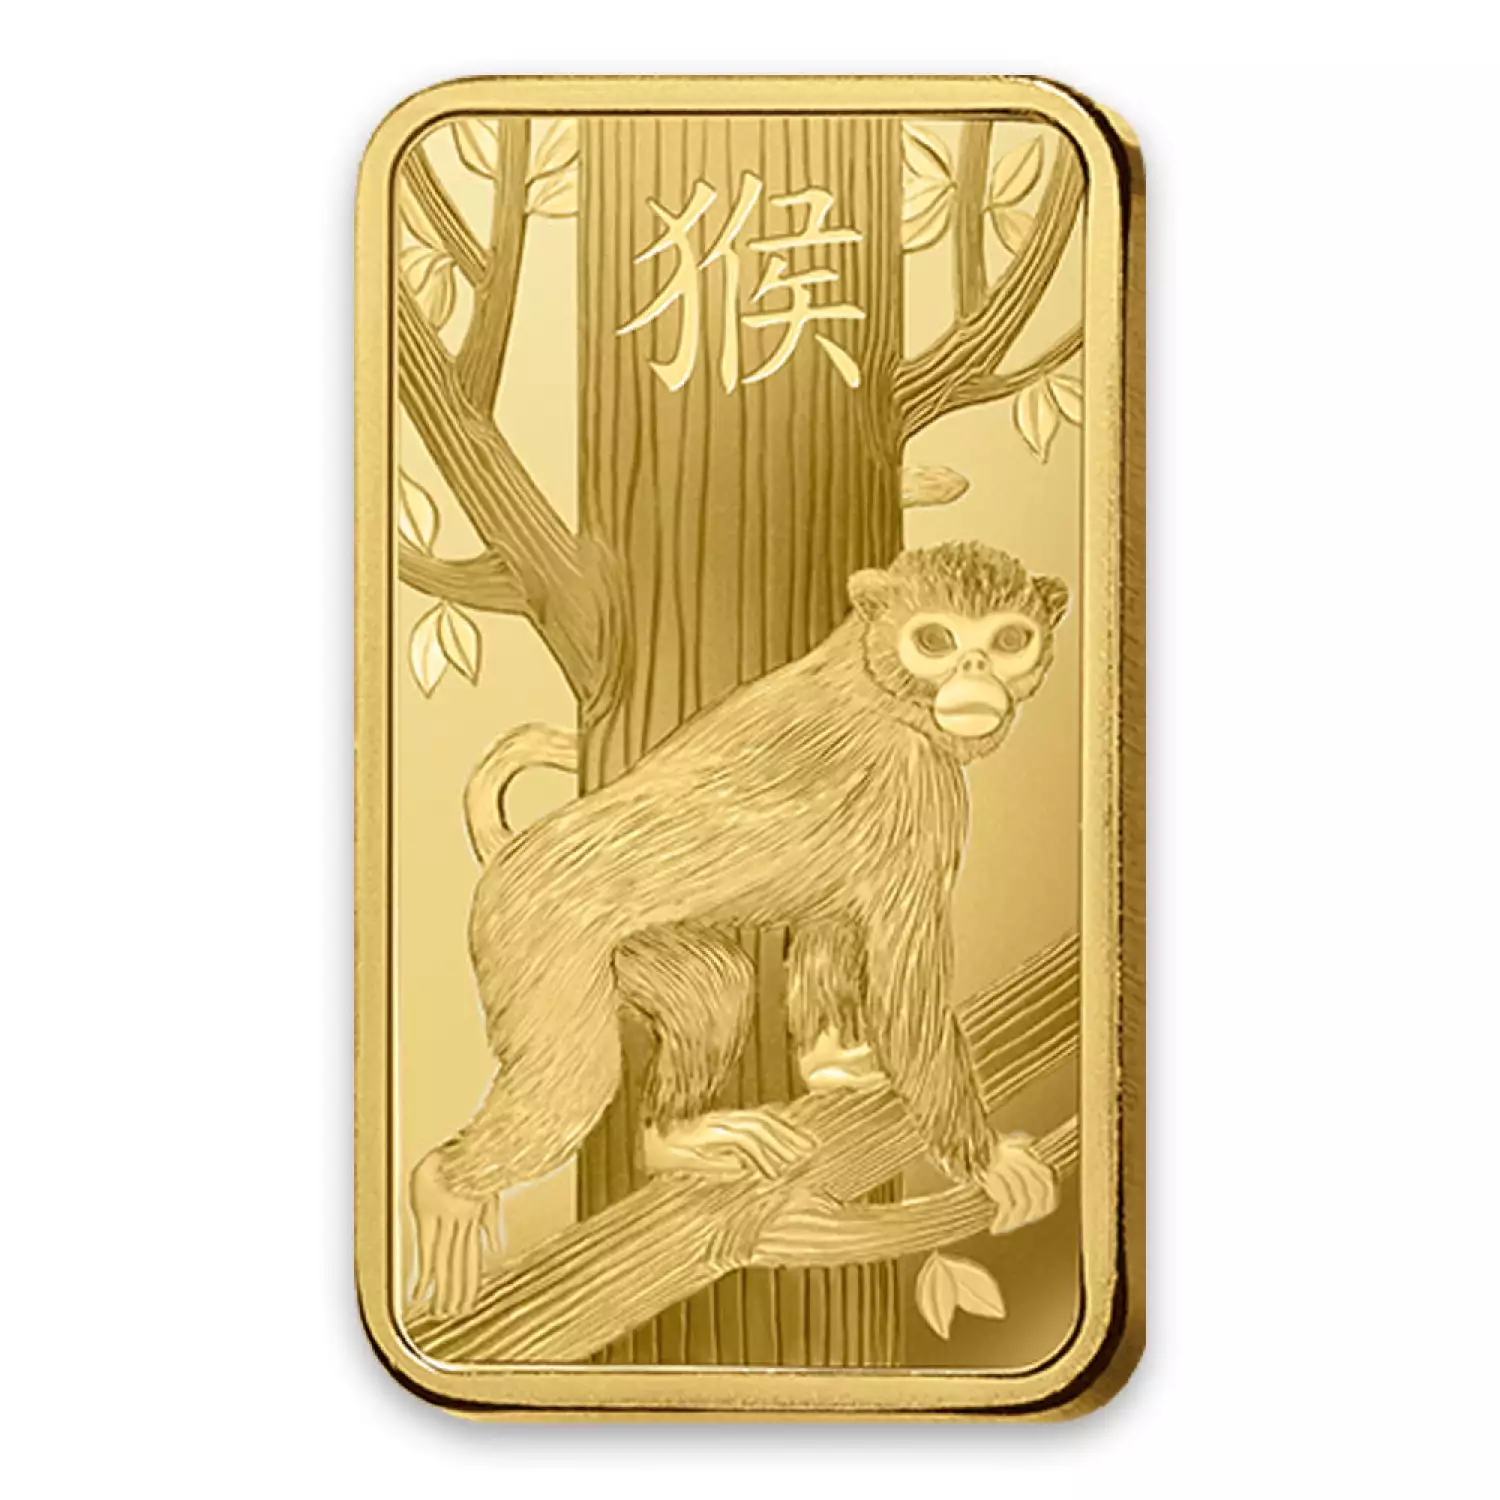 5g PAMP Gold Bar - Lunar Monkey (2)